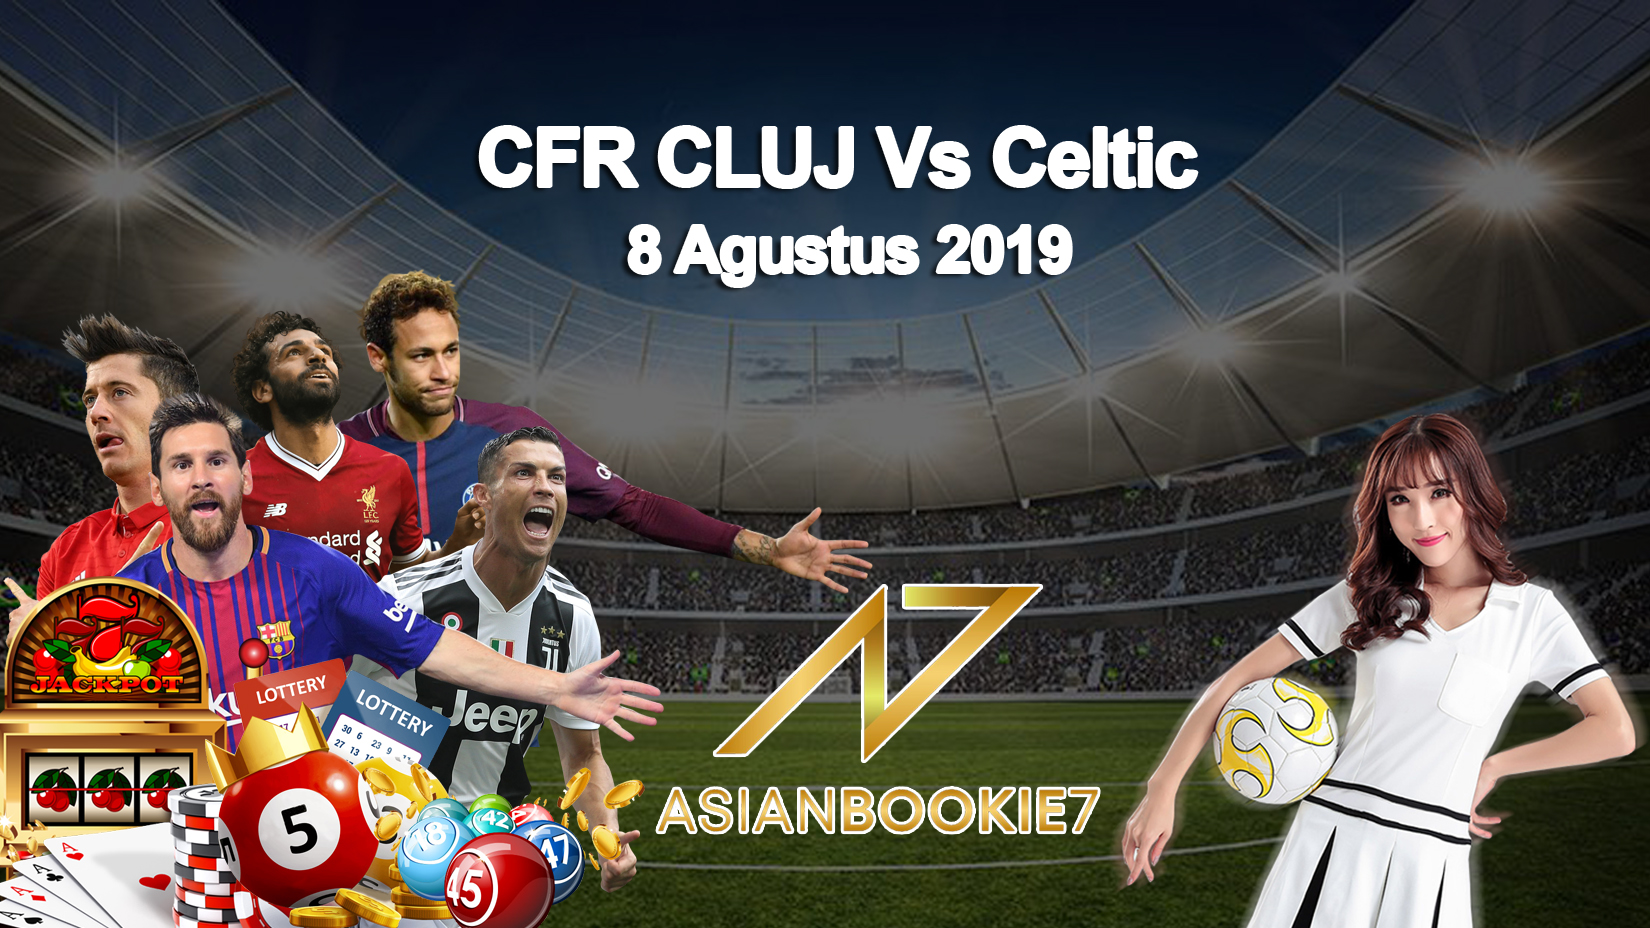 Prediksi CFR CLUJ Vs Celtic 8 Agustus 2019